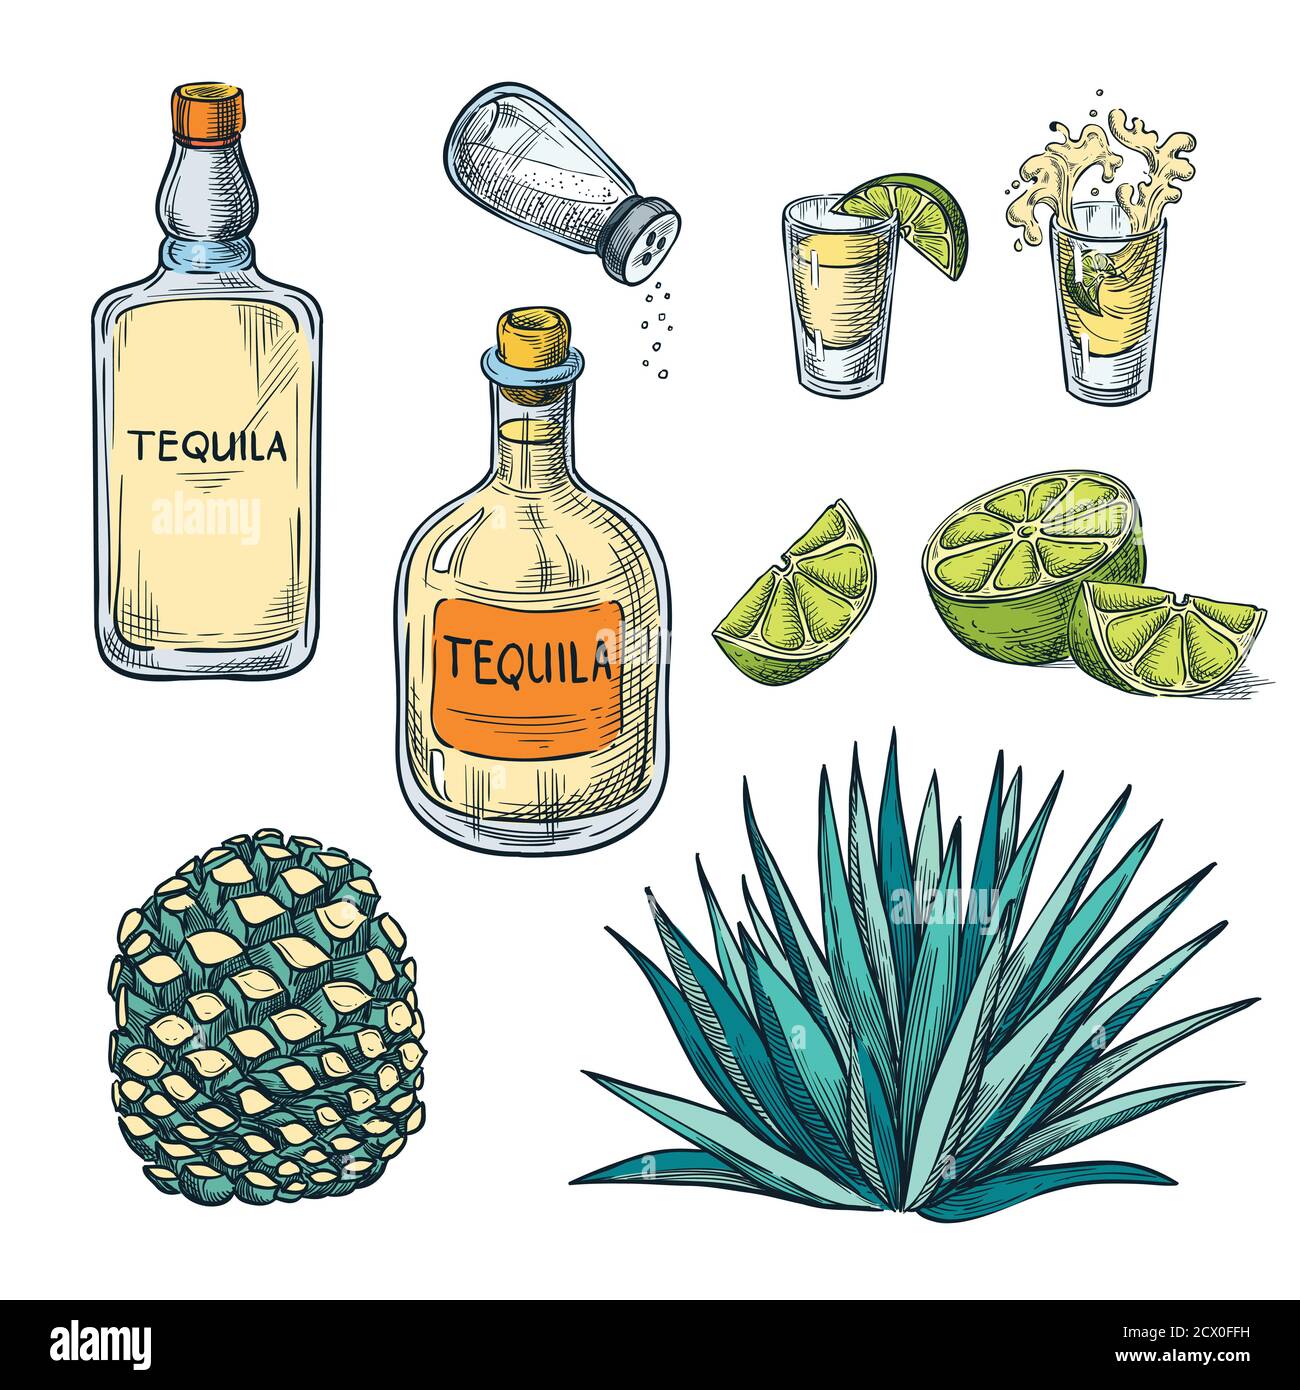 Tequila-Flasche, Schnapsglas und Agave Wurzel Zutaten, Vektor Farbe Skizze Illustration. Mexikanische alkoholfreie Getränke Menü Designelemente. Stock Vektor